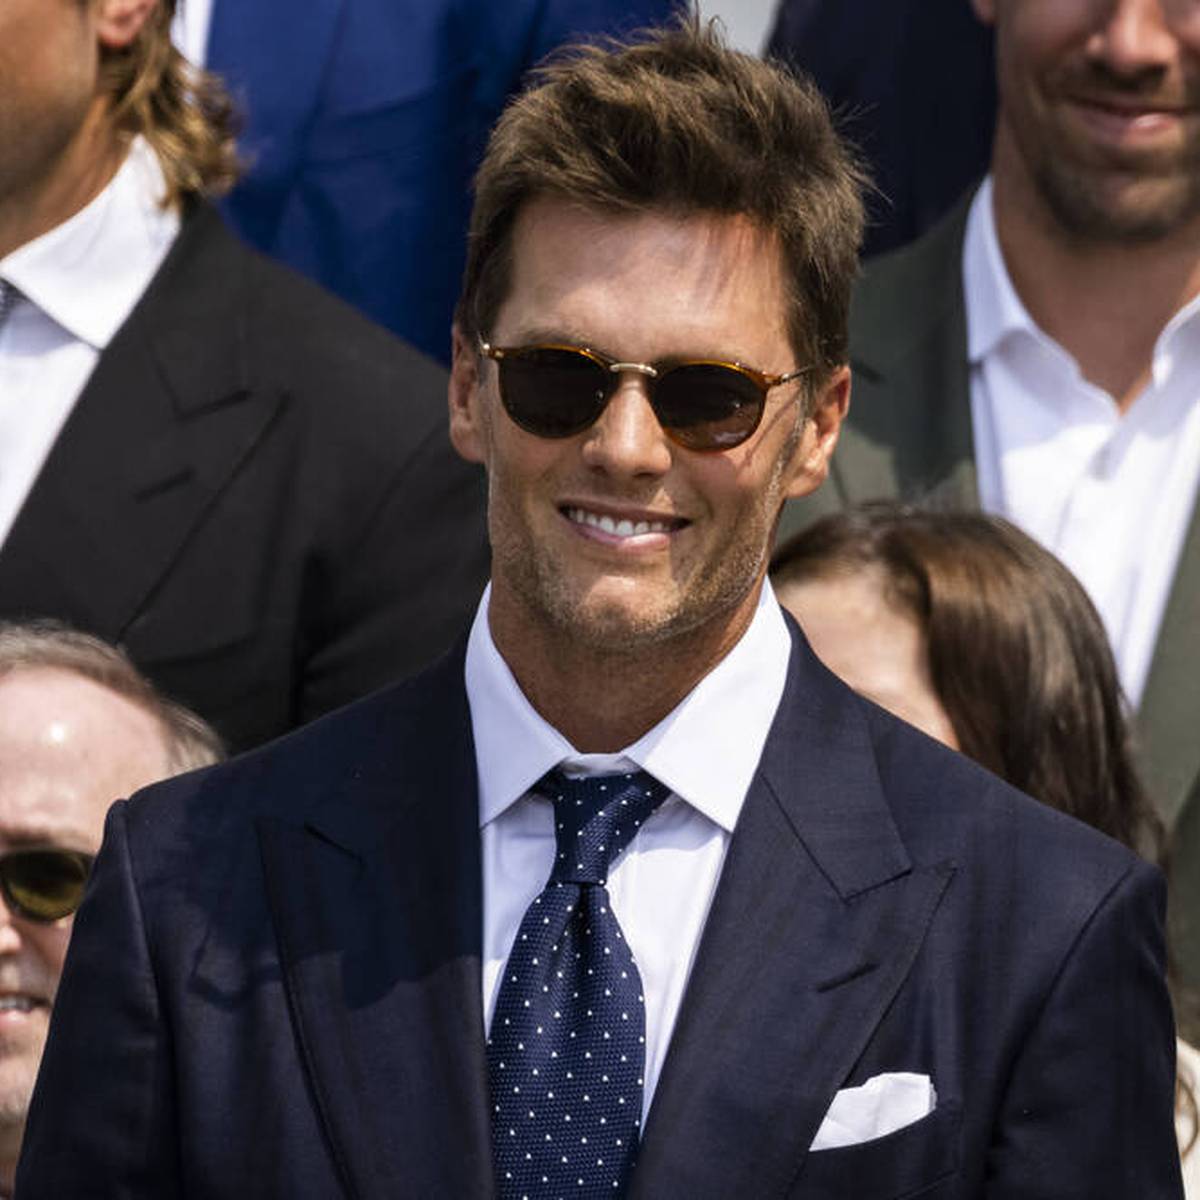 Tom Brady gilt im Football als der „Greatest of all Time“, abgekürzt „GOAT“. Nun versucht der 44-Jährige auch die Welt des Streamings zu erobern - mit einem neuen TV-Format namens „GROAT“.